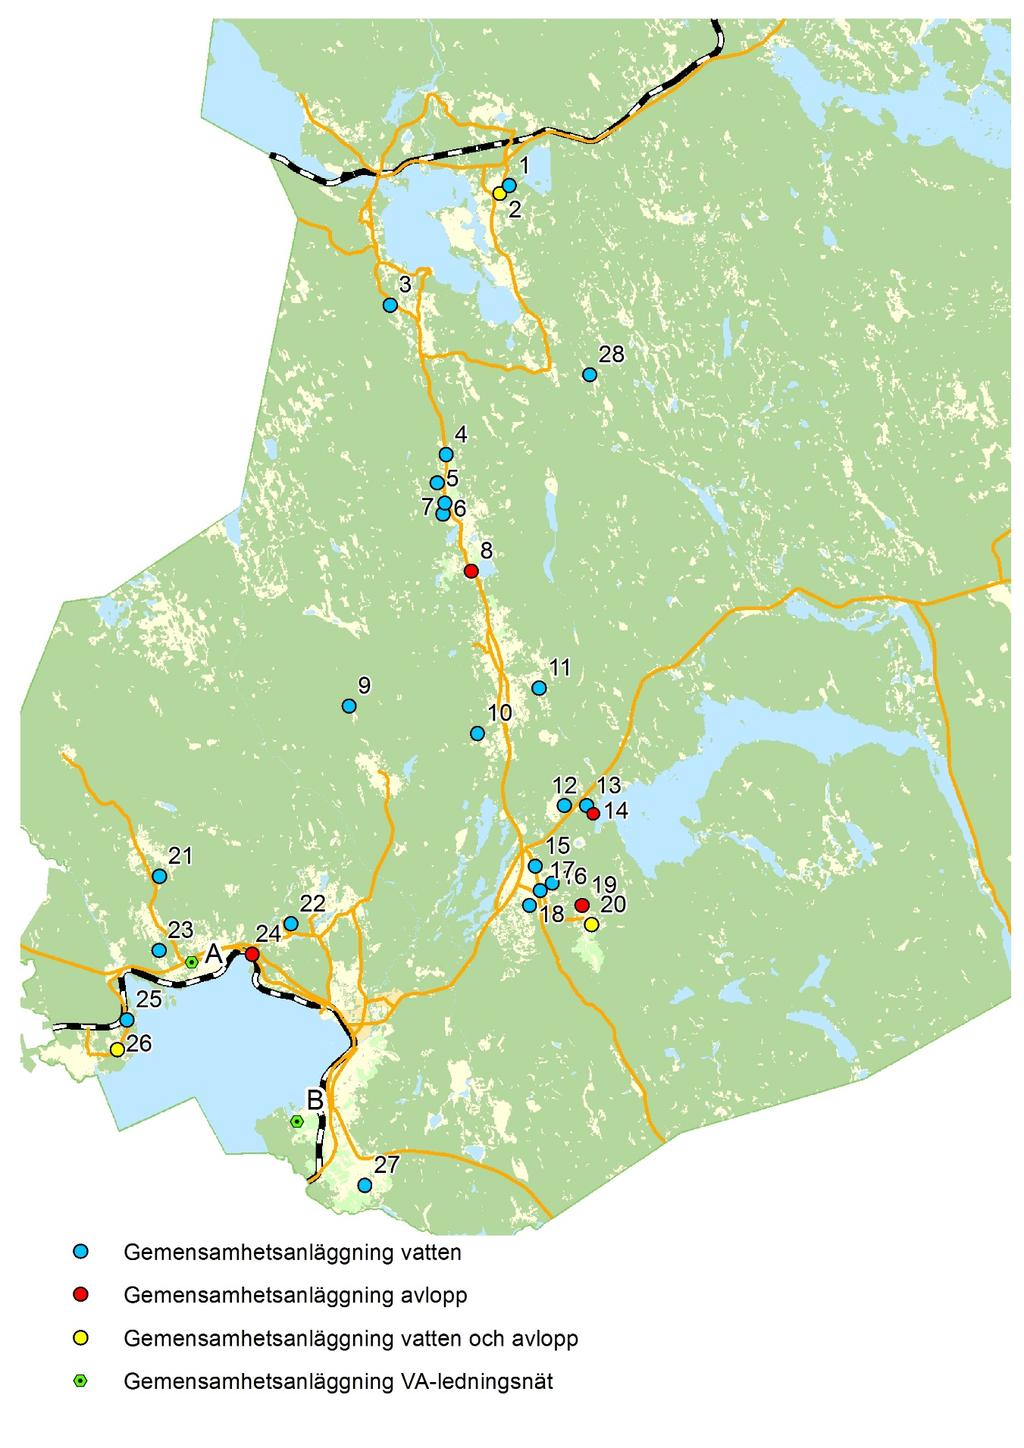 Nedan finns gemensamhetsanläggningar i Rättviks kommun placerade geografiskt.